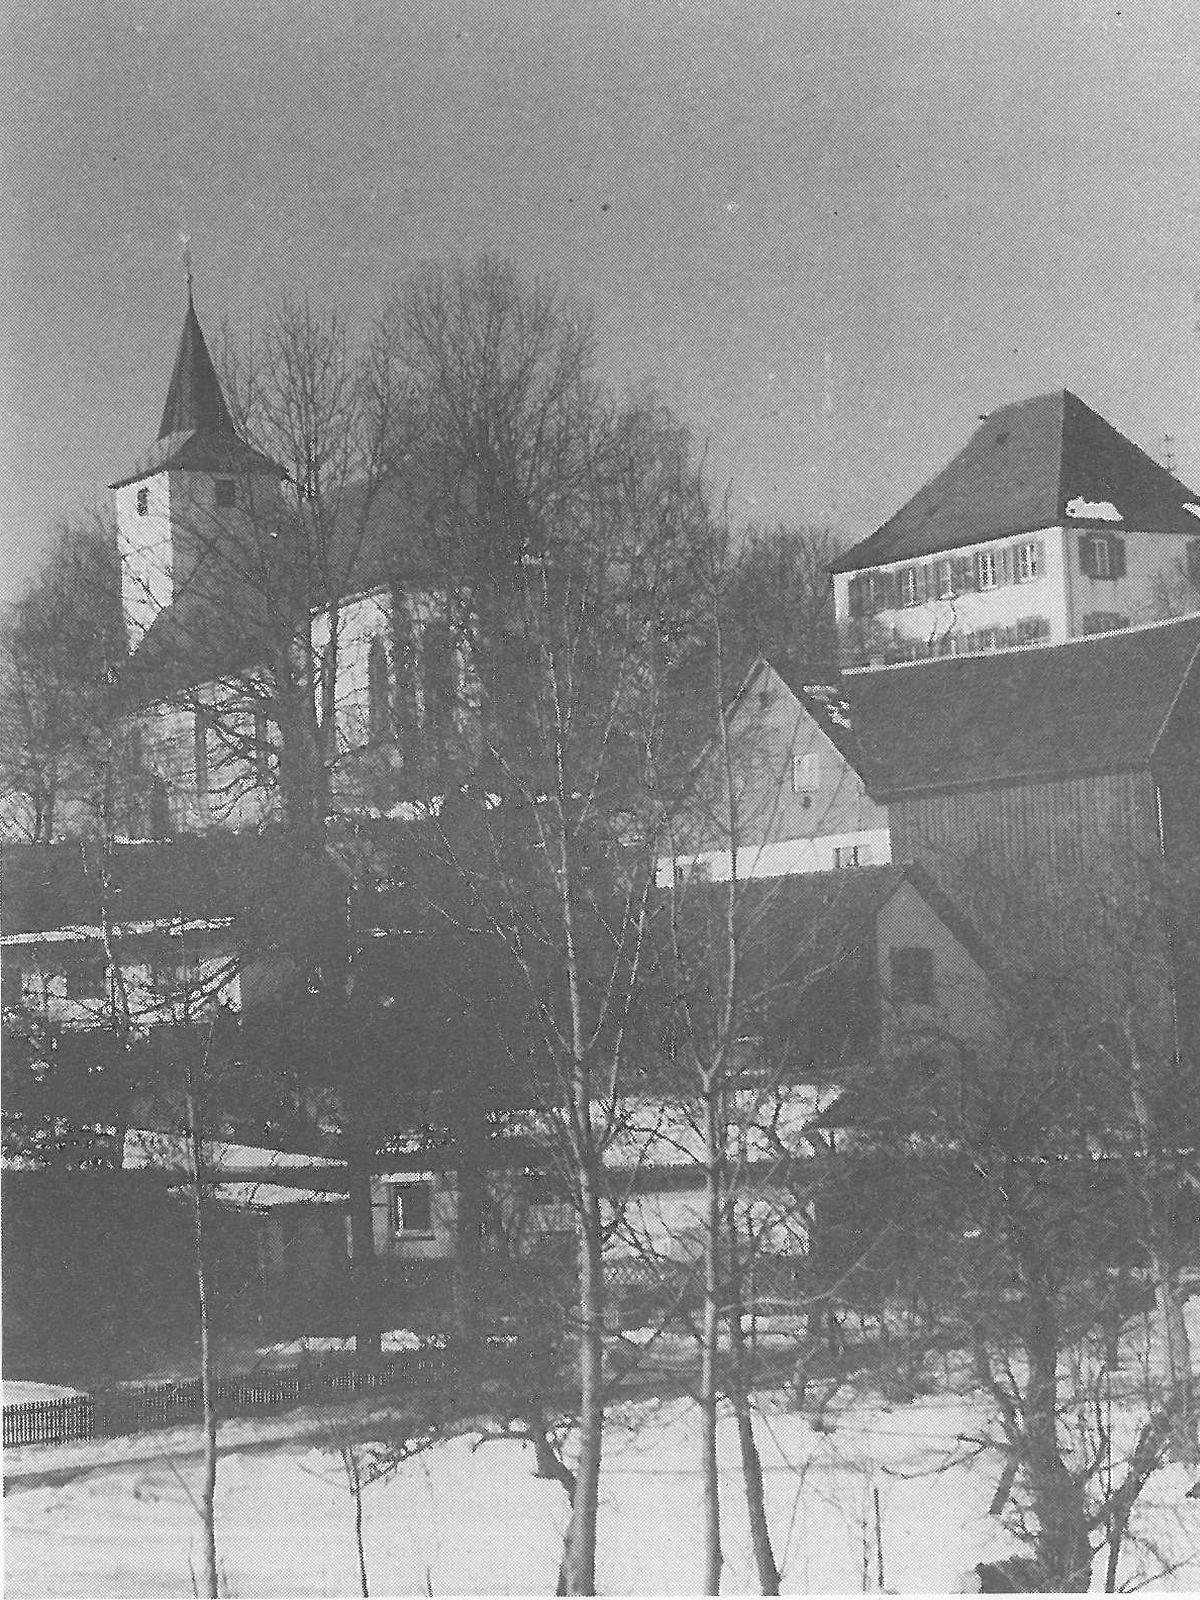  Schopflocher Skizzen Frühlingserwachen in Oberiflingen, Unterdorf - Bild wird mit einem Klick vergrößert 